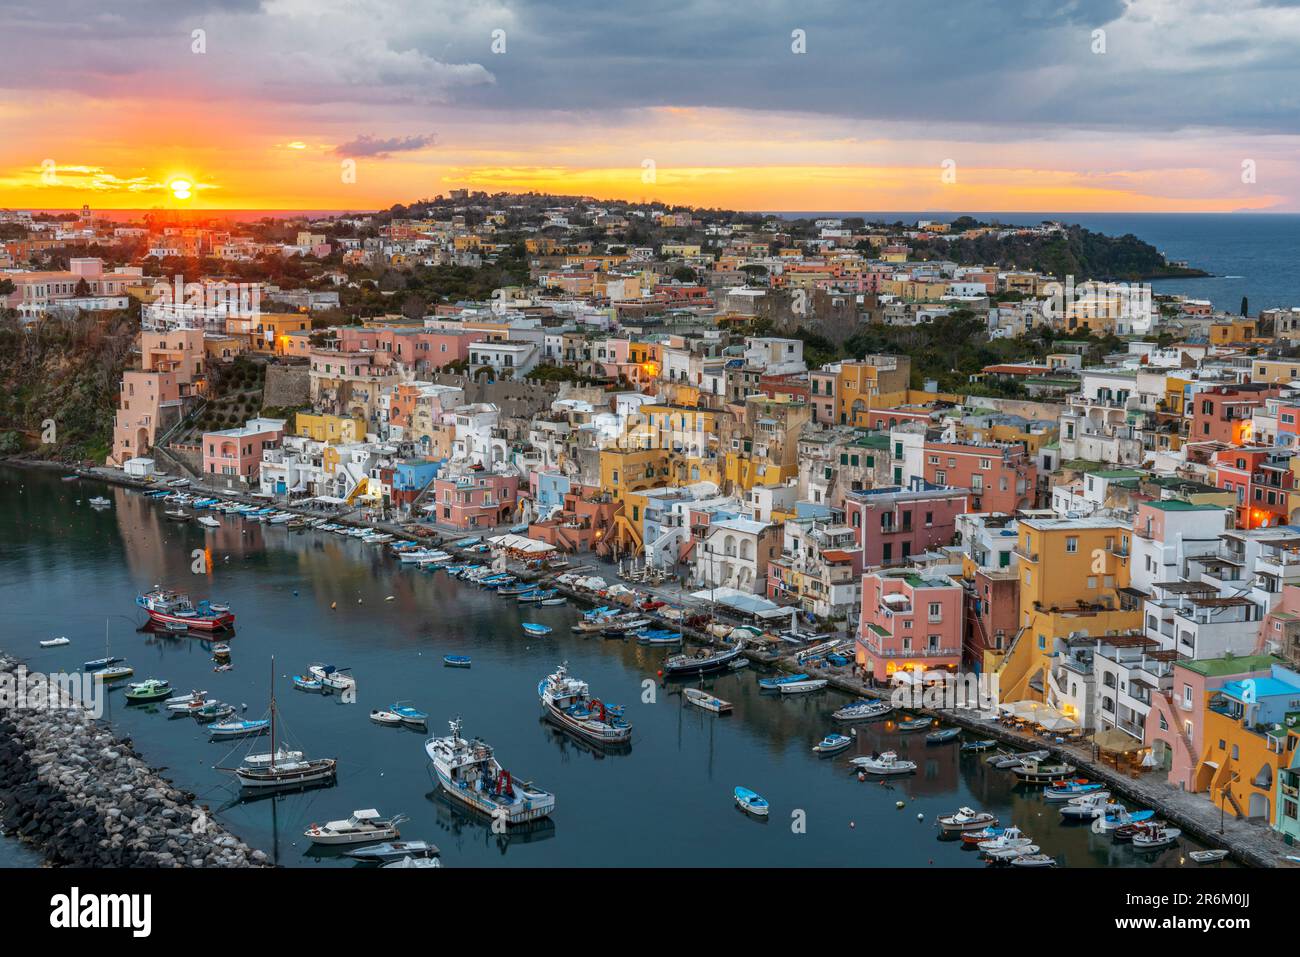 Sonnenuntergang auf Marina Corricella, dem berühmten farbenfrohen Fischerdorf auf der Insel Procida, Tyrrhenian Sea, Viertel Neapel, Bucht von Neapel, Region Kampanien Stockfoto